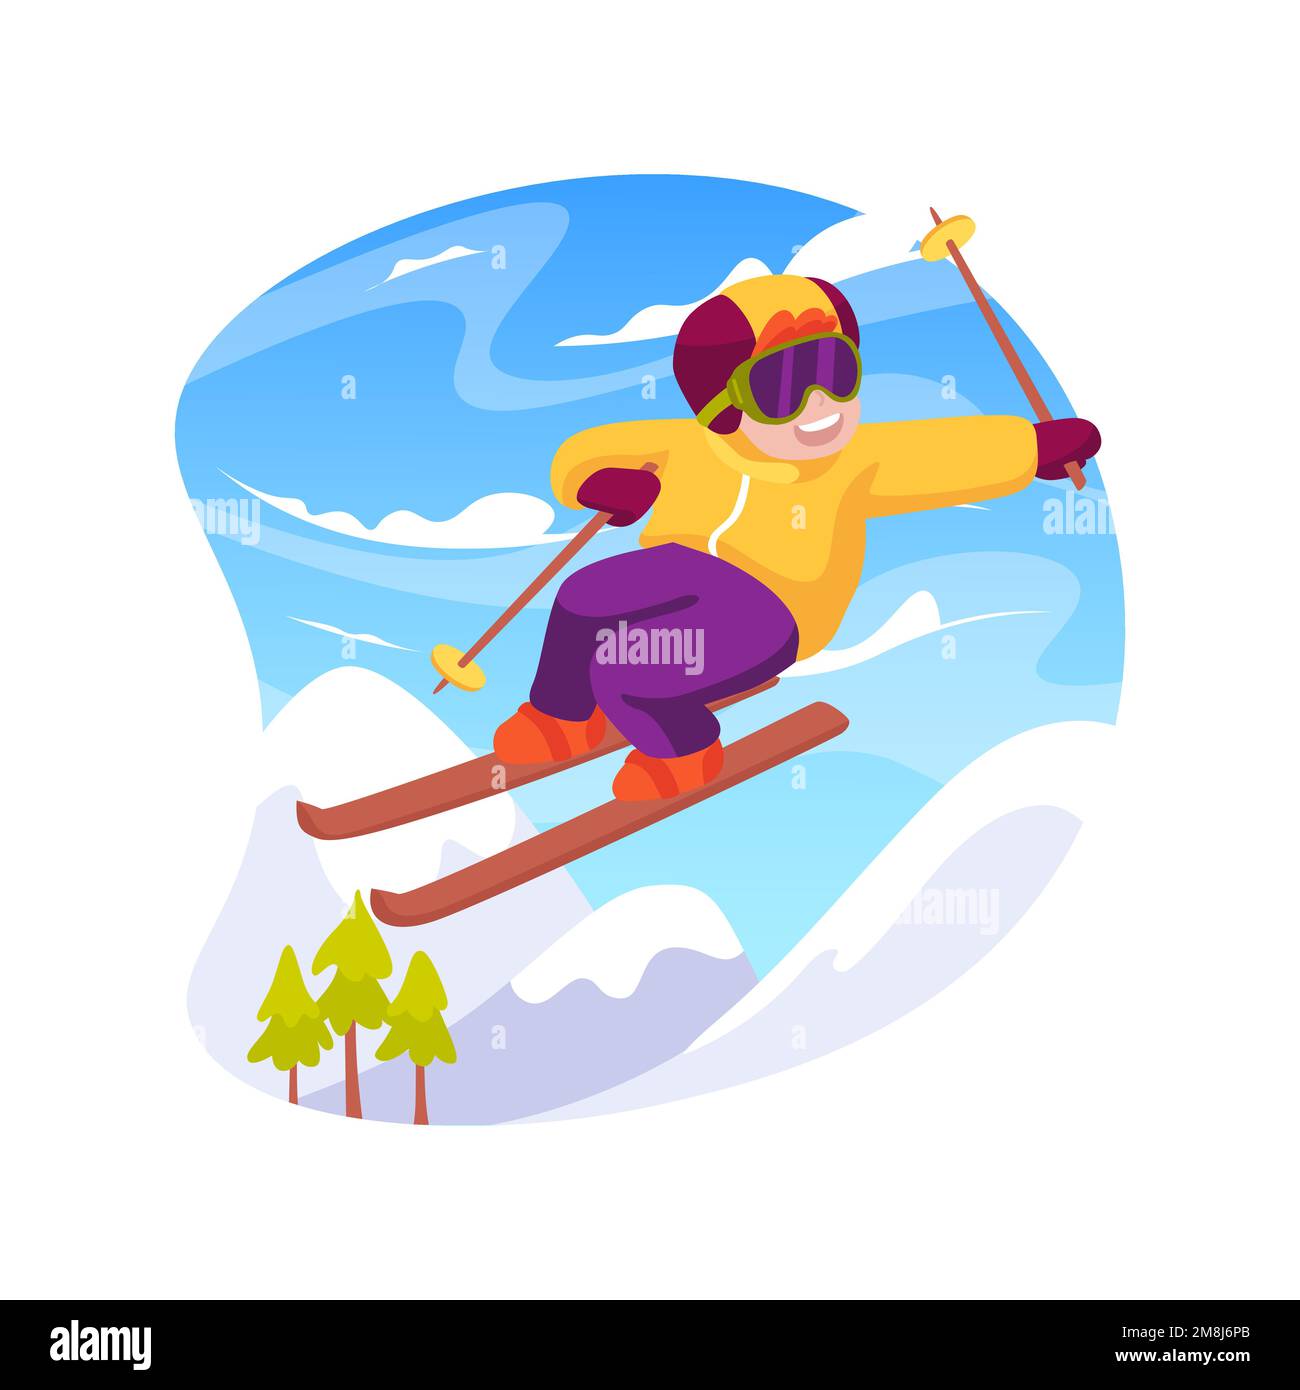 Skitricks isolierte Cartoon-Vektordarstellung. Eine Gruppe lächelnder Kinder, die springen und Skistricks machen, eine glückliche Kindheit, Wintersport im Freien, Menschen Stock Vektor